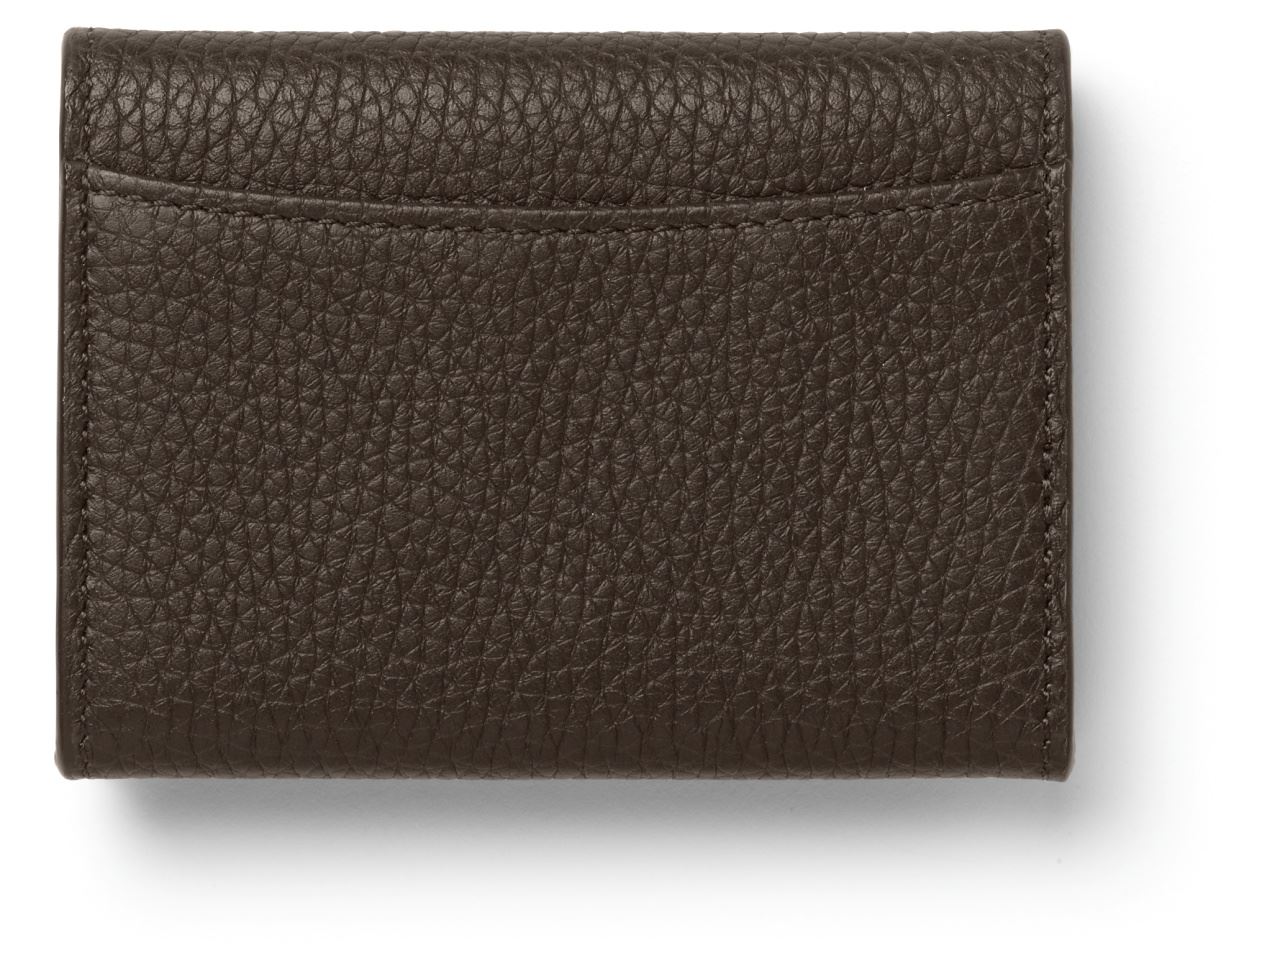 Graf-von-Faber-Castell - Coin purse Cashmere, dark brown